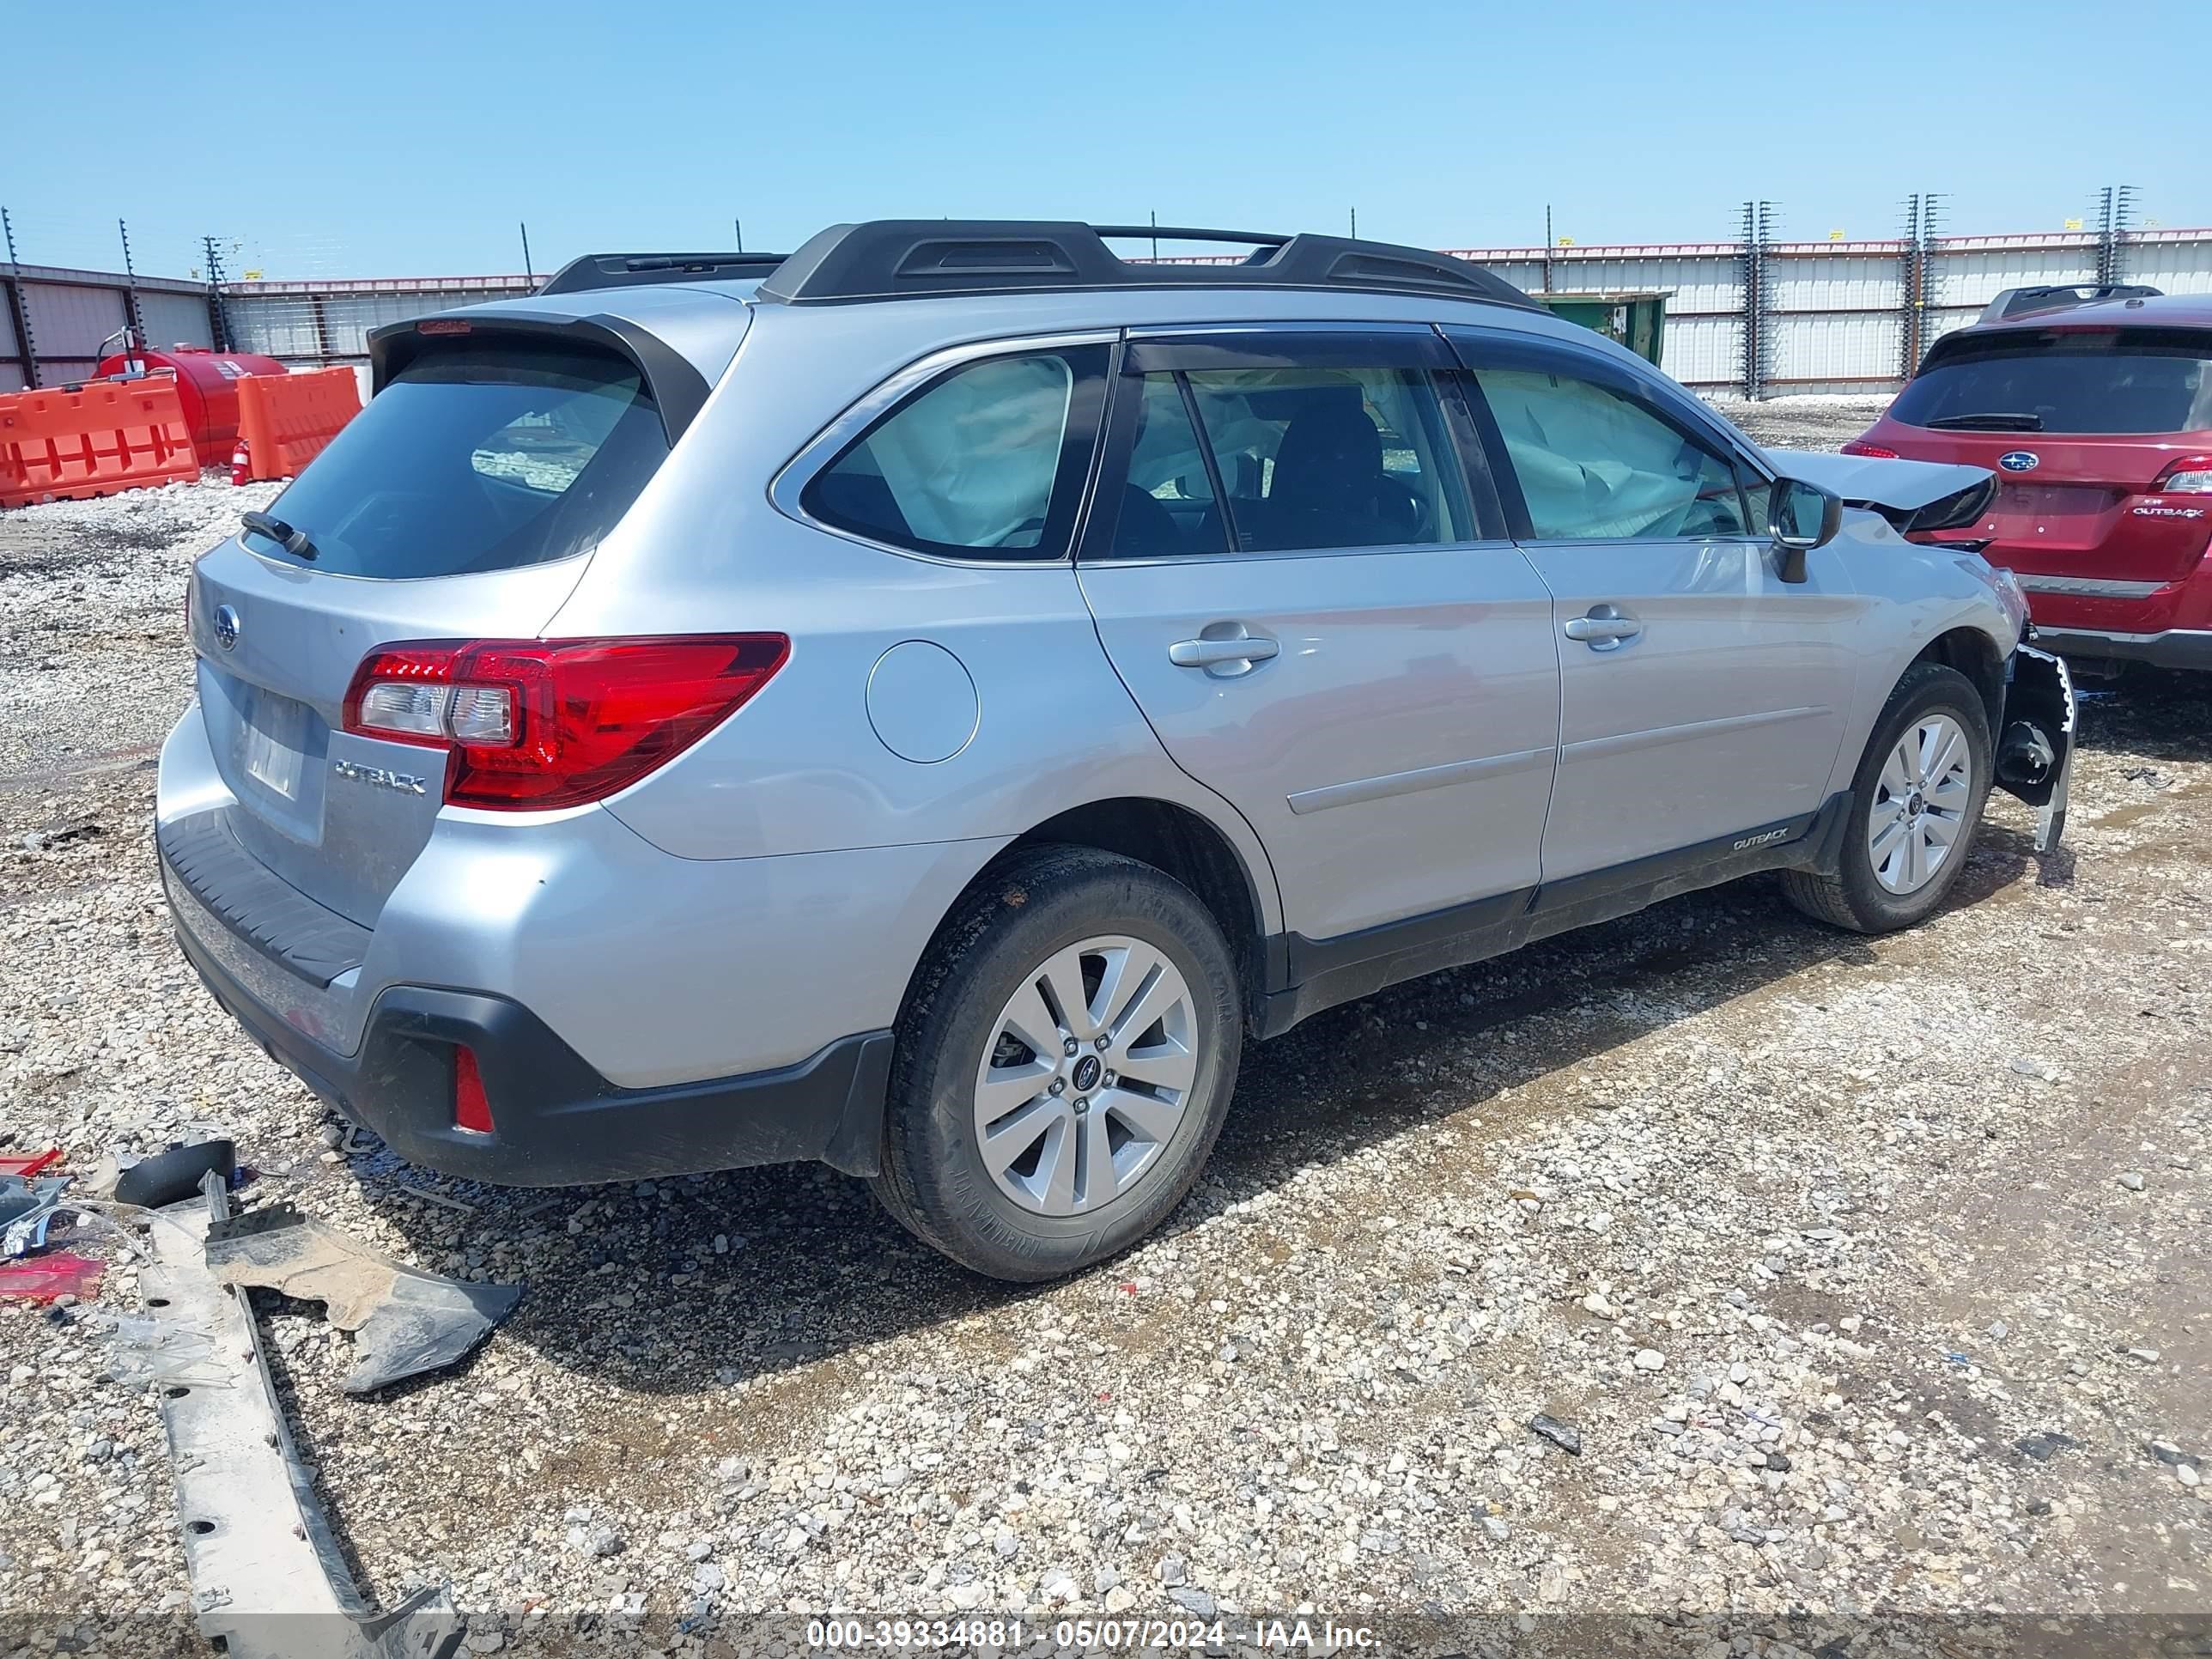 2018 Subaru Outback 2.5I vin: 4S4BSAAC5J3342699